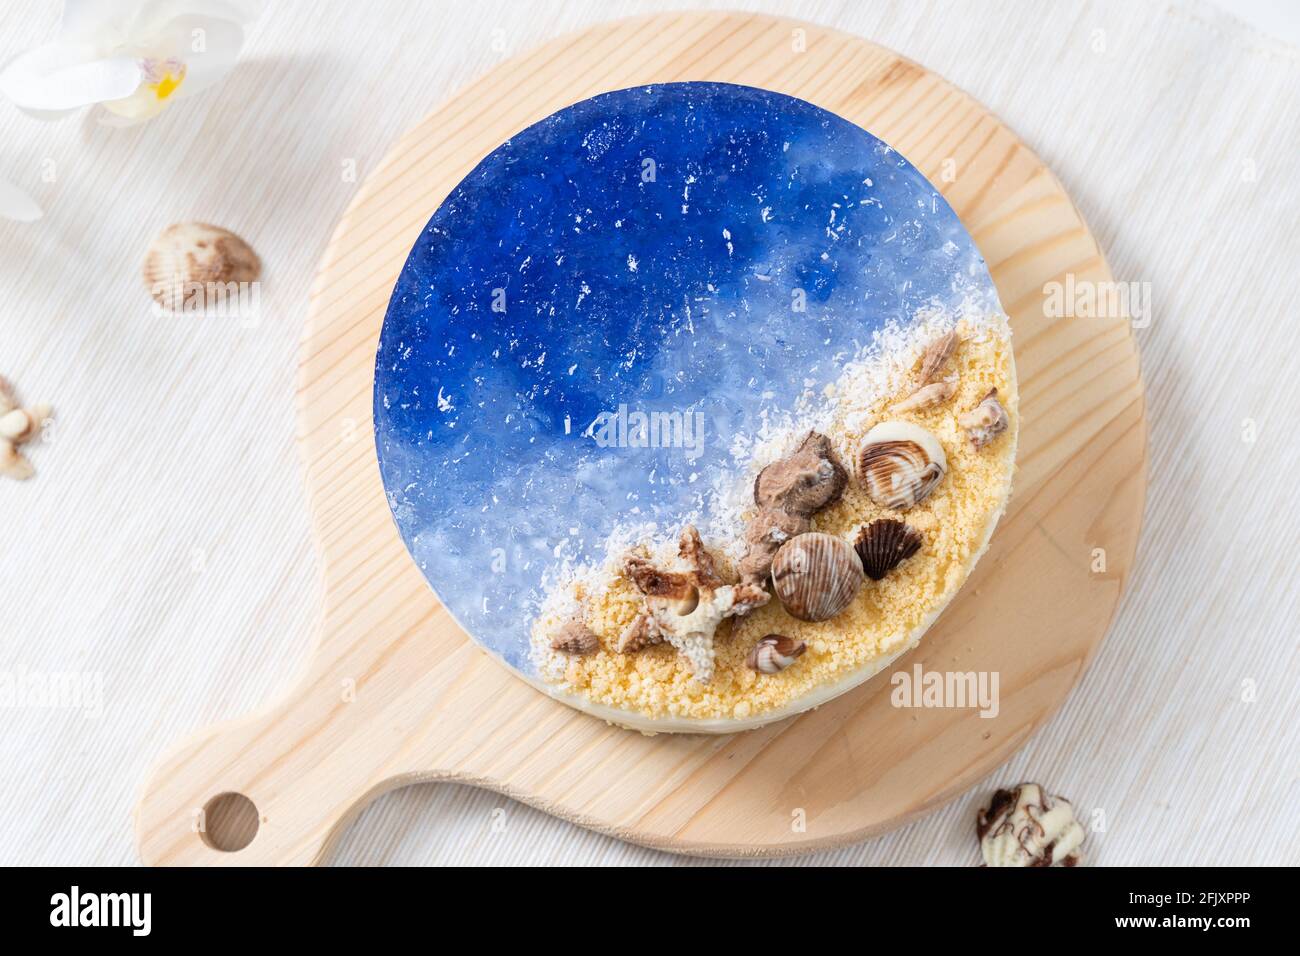 No había pastel de queso azul marino al horno con decoración de conchas de chocolate Foto de stock